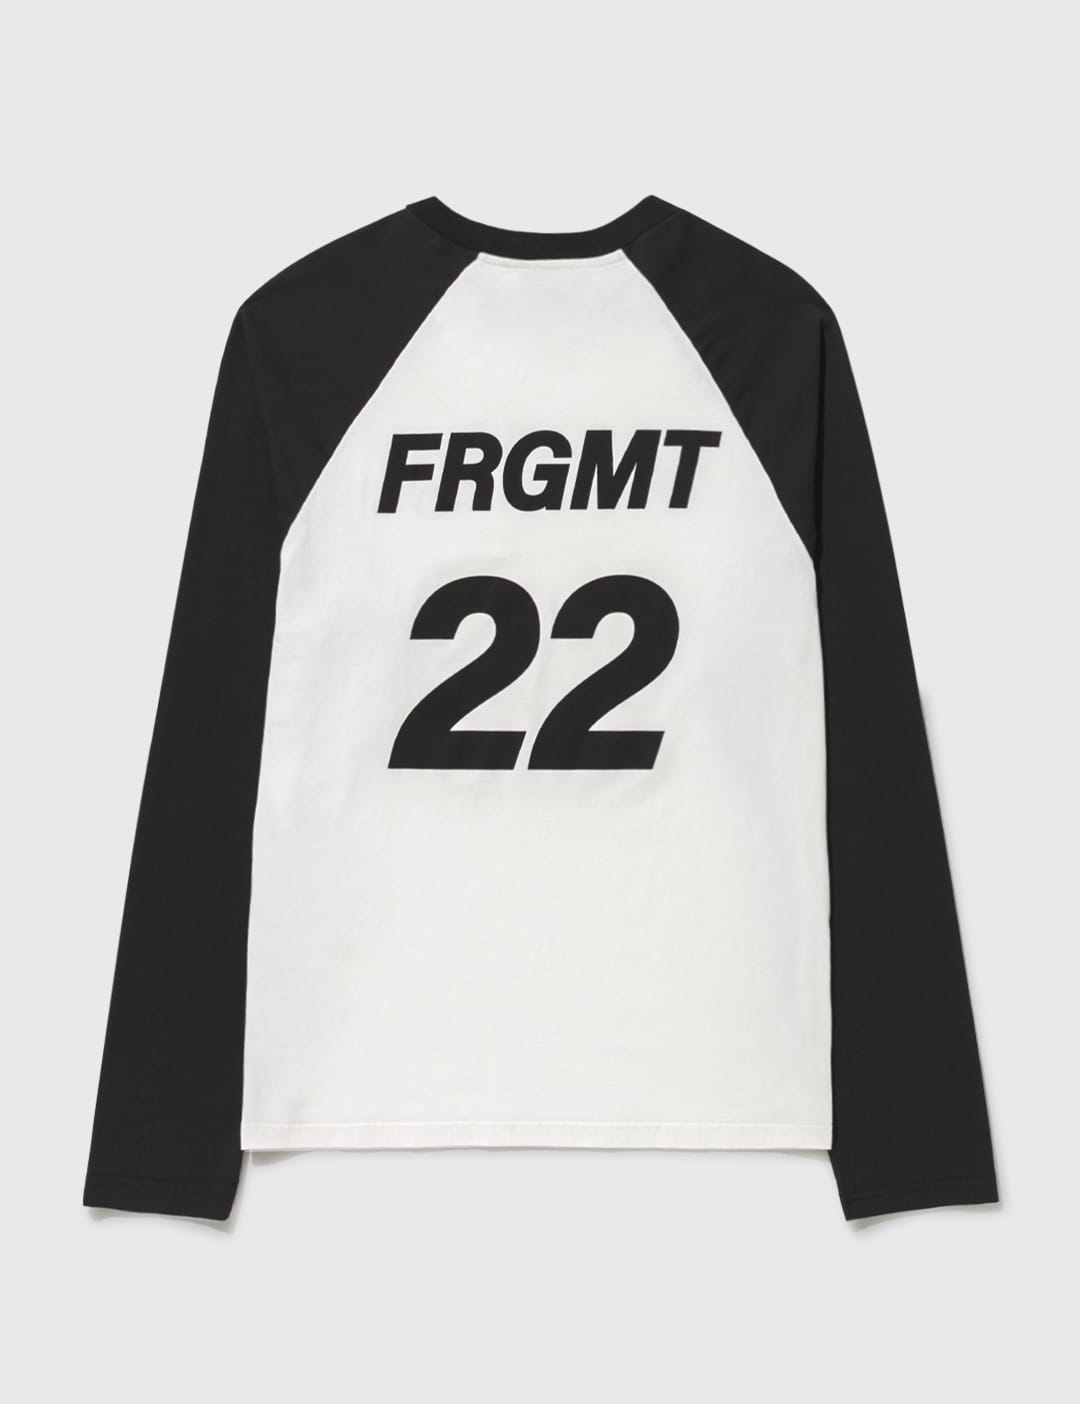 Moncler Genius - 7 Moncler FRGMT Hiroshi Fujiwara Raglan T-Shirt